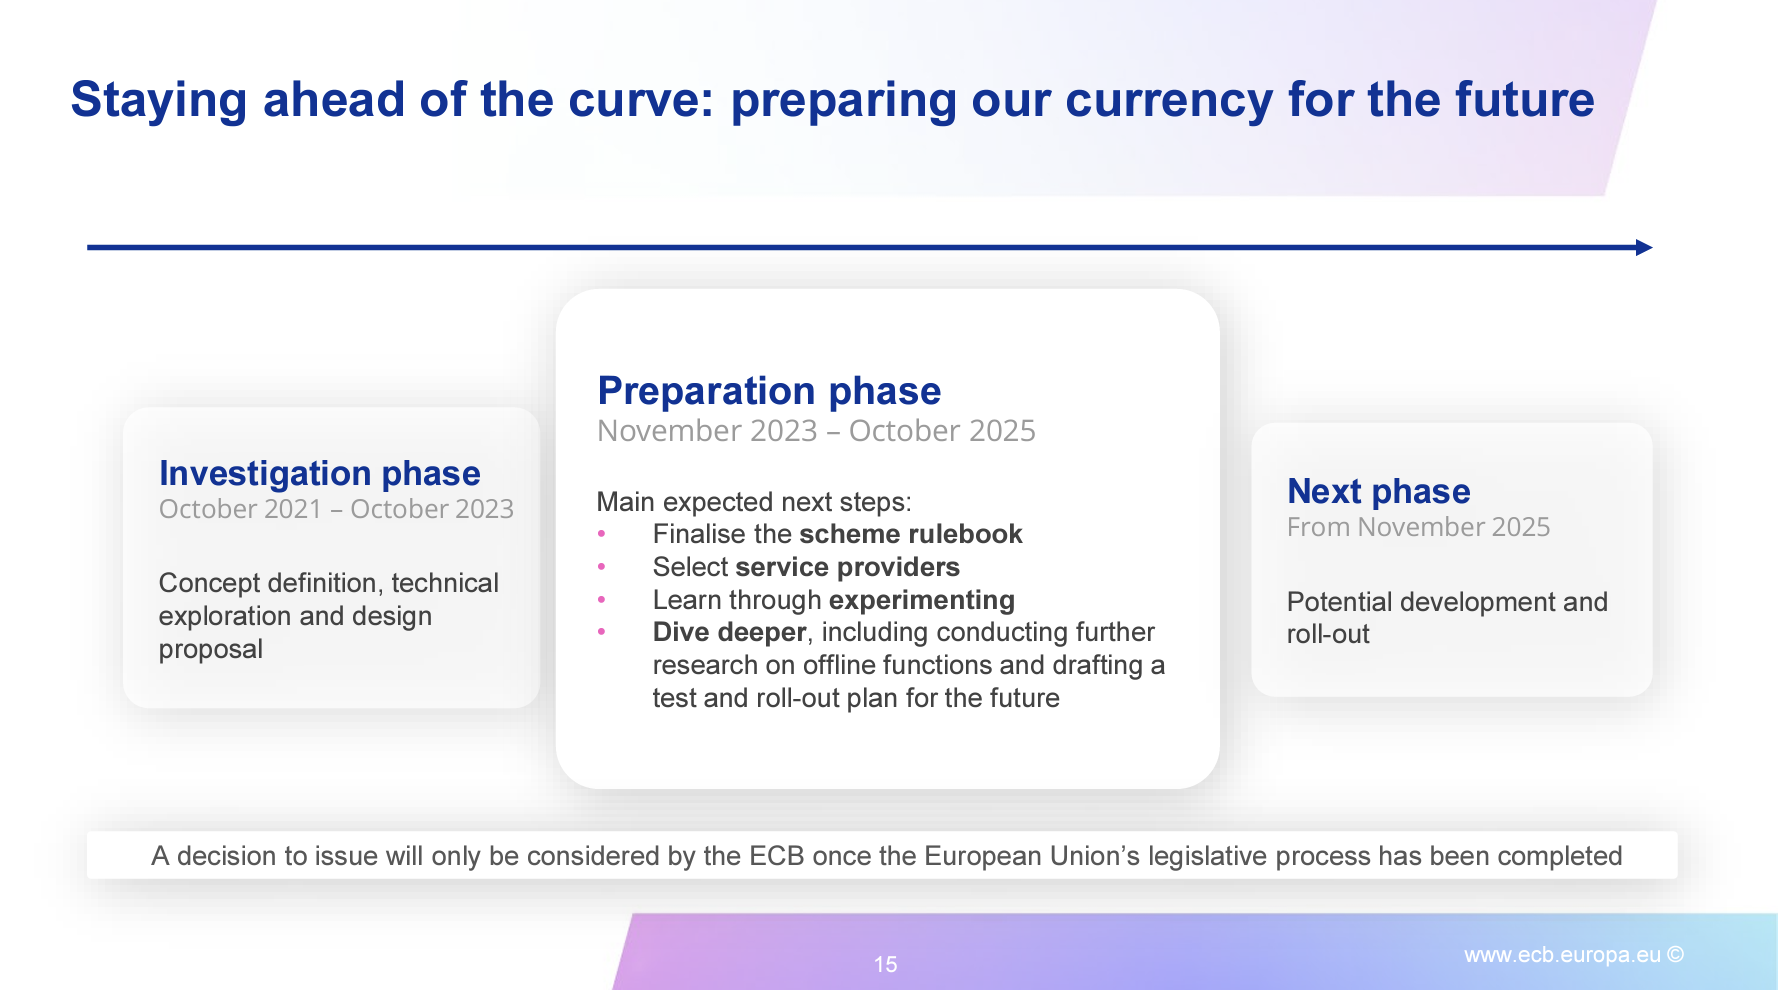 Исполнительный директор ЕЦБ планирует развертывание цифрового евро-CBDC в ноябре 2025 года